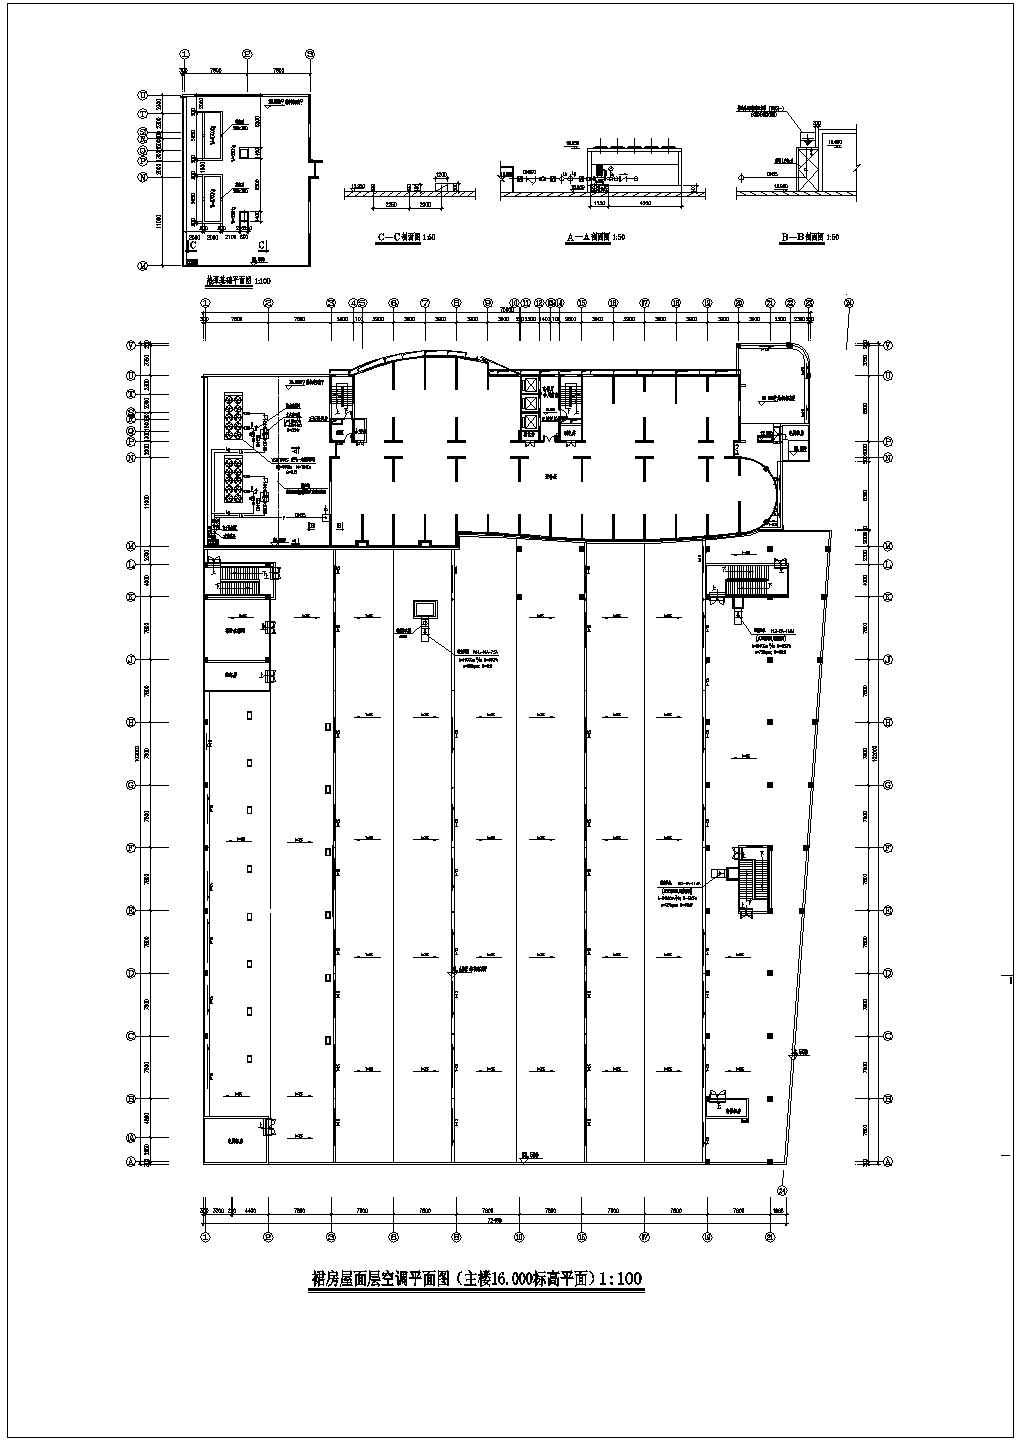 石家庄银座大厦商场整套空调设计方案图